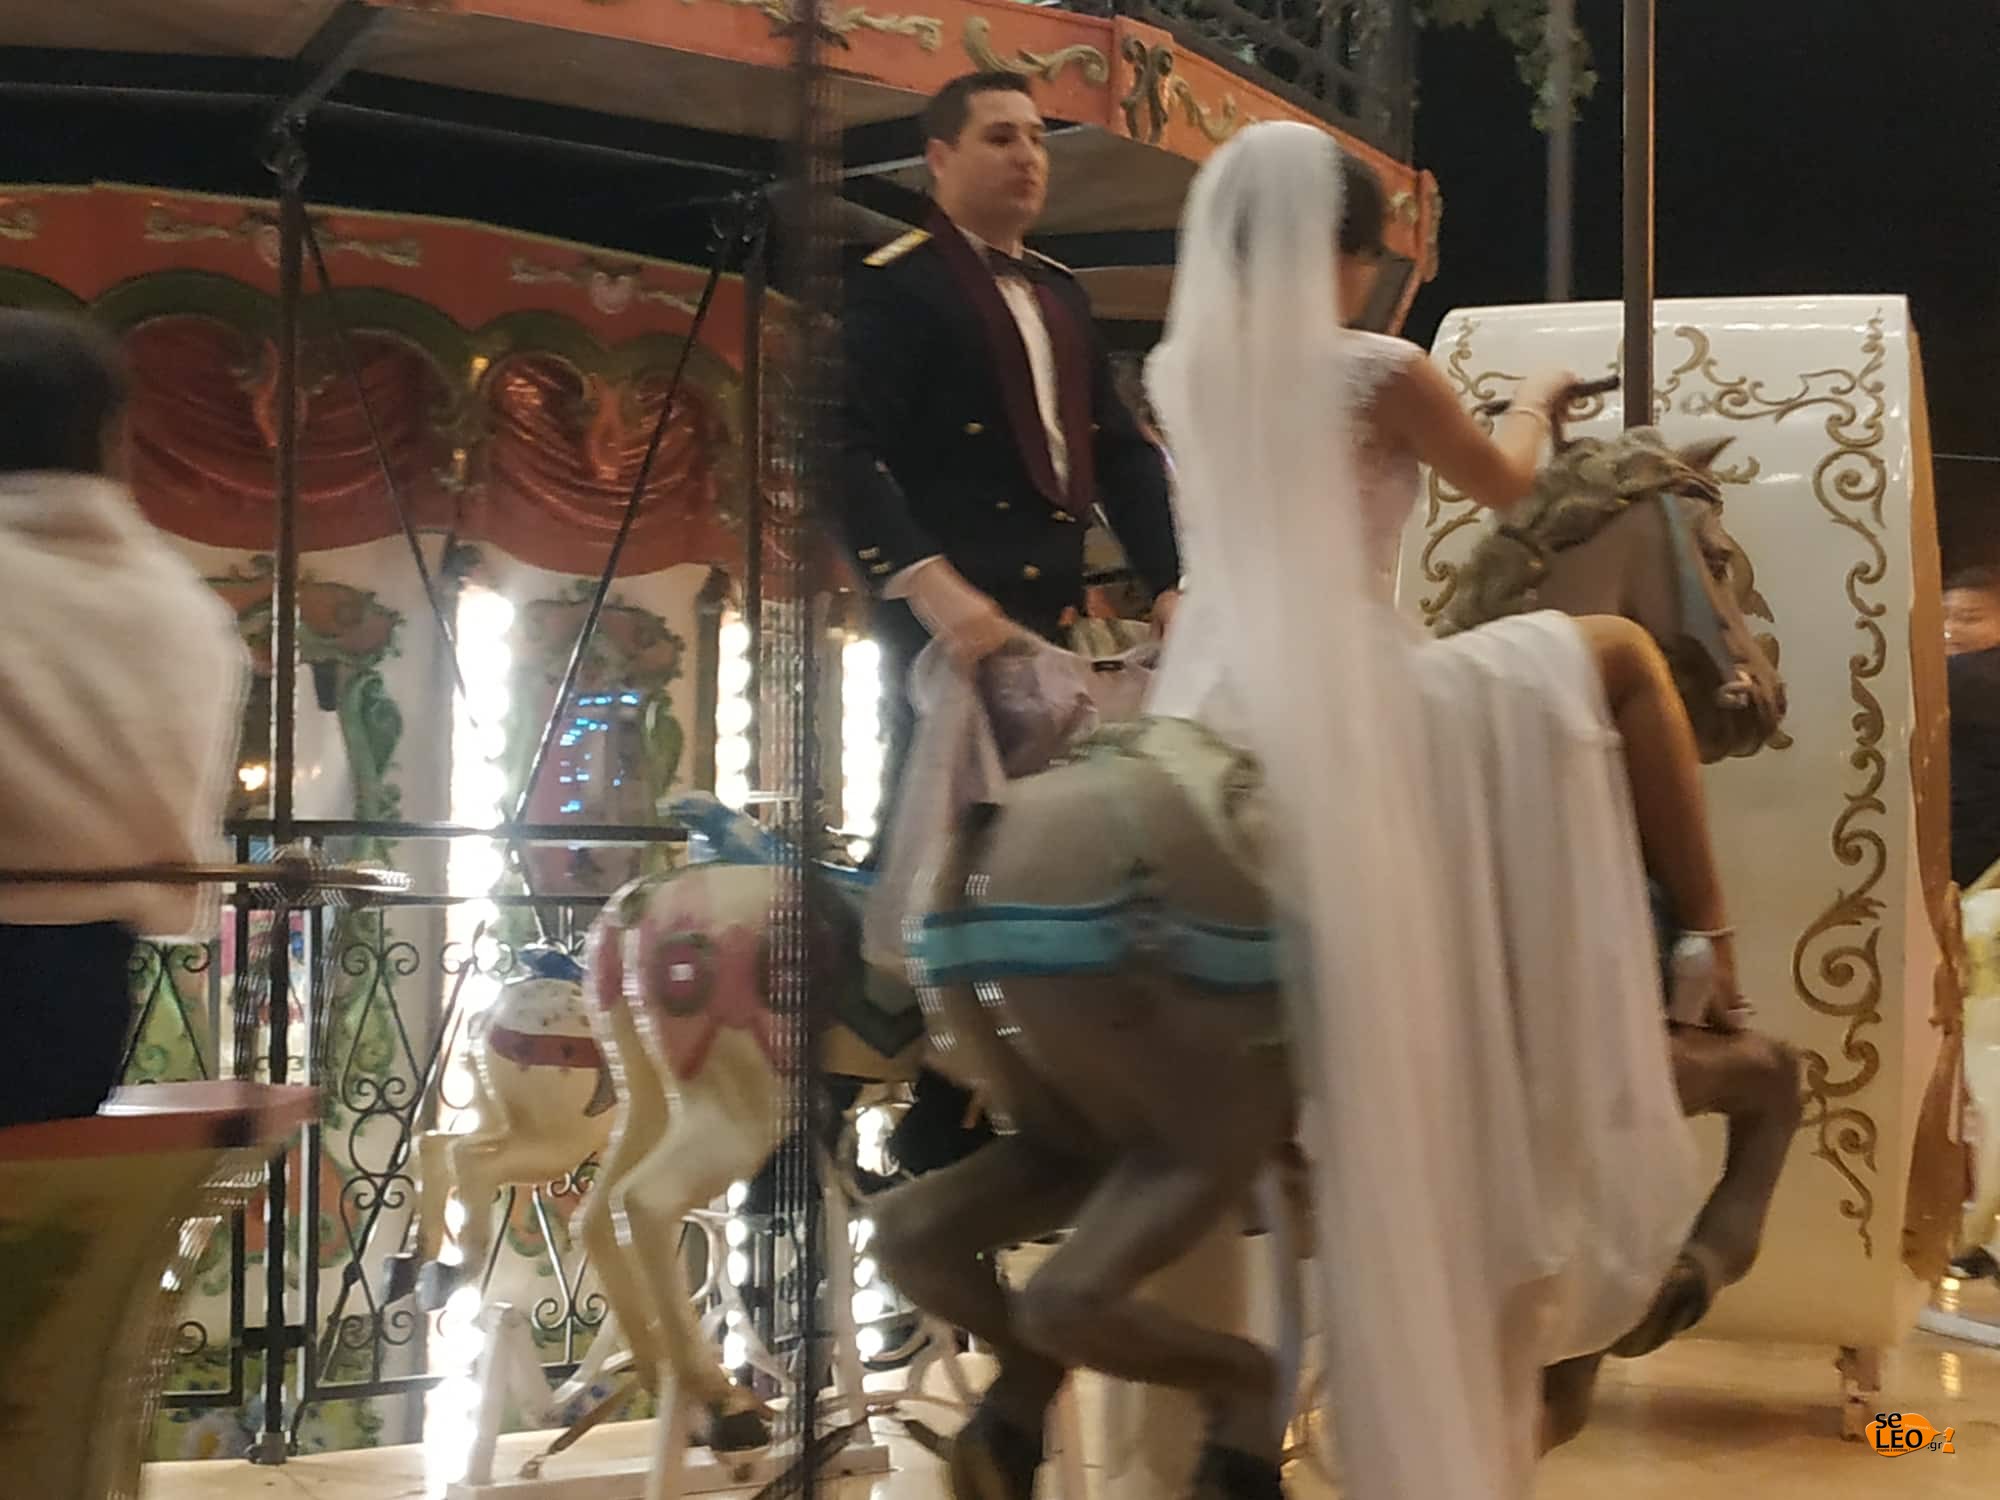 Θεσσαλονίκη: Η κούκλα νύφη ανέβηκε στο καρουζέλ! Οι νεόνυμφοι έκαναν την έκπληξη [pics]